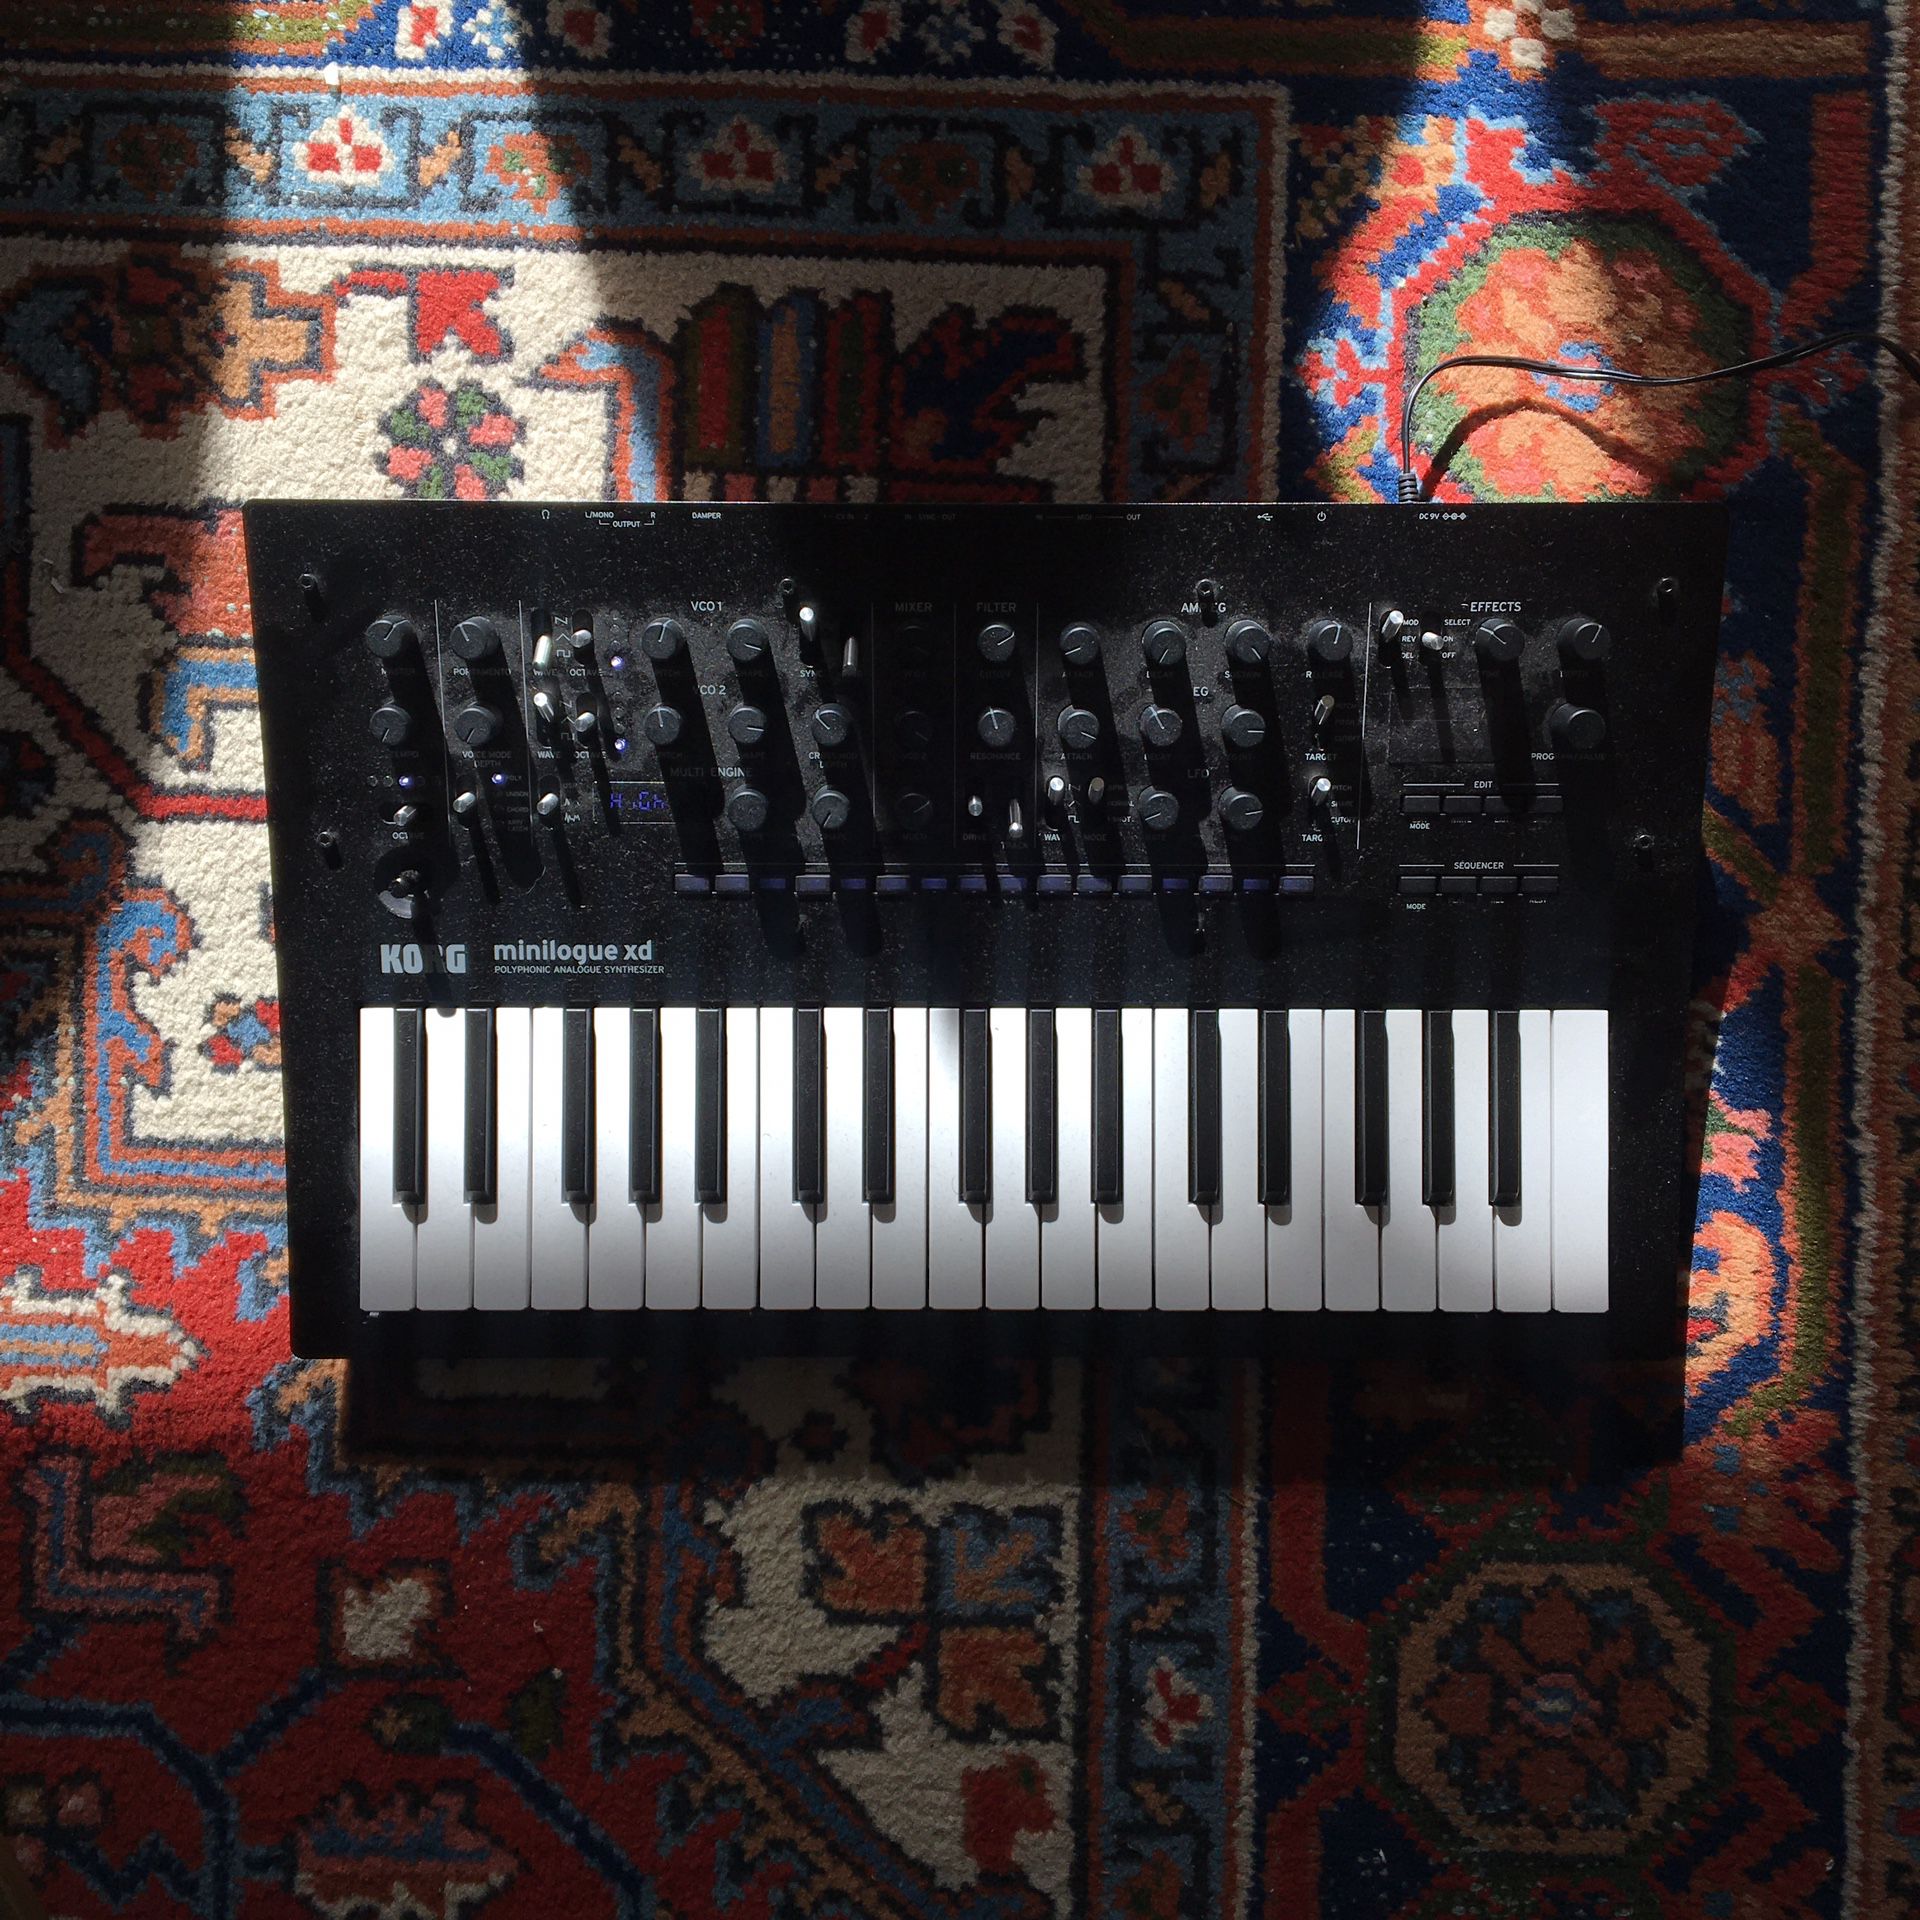 Korg minilogue xd synthesizer